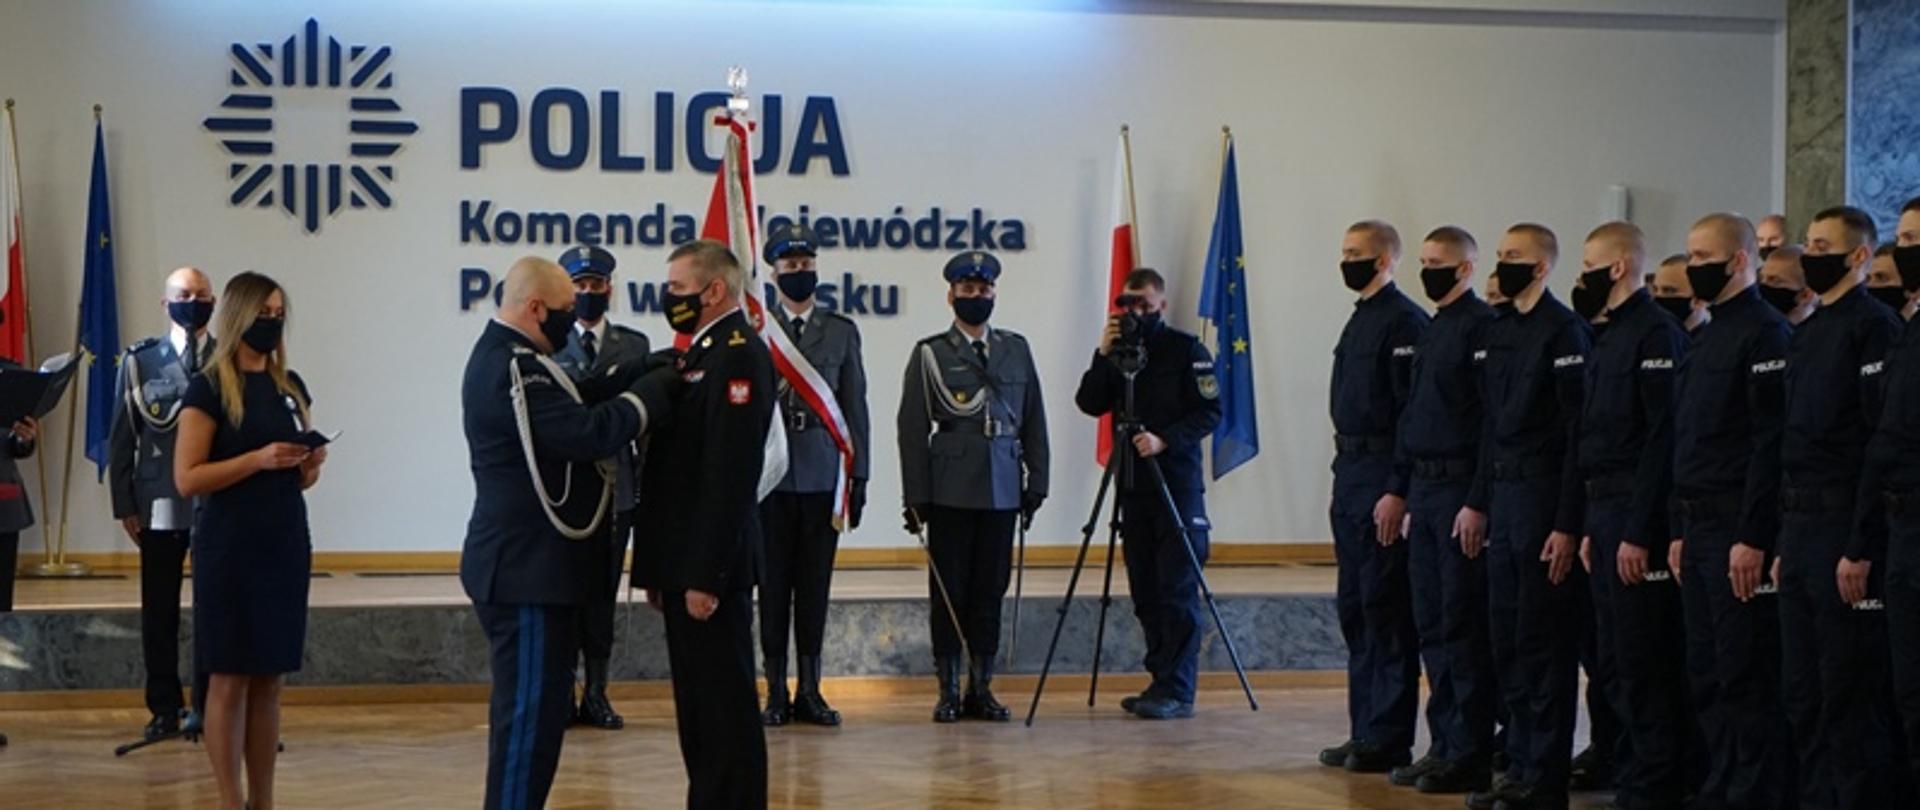 Komendant wojewódzki Policji przypina medal pomorskiemu komendantowi wojewódzkiemu Państwowej Straży Pożarnej podczas ceremonii ślubowania nowo przyjętych policjantów. W tle stoją policjanci.